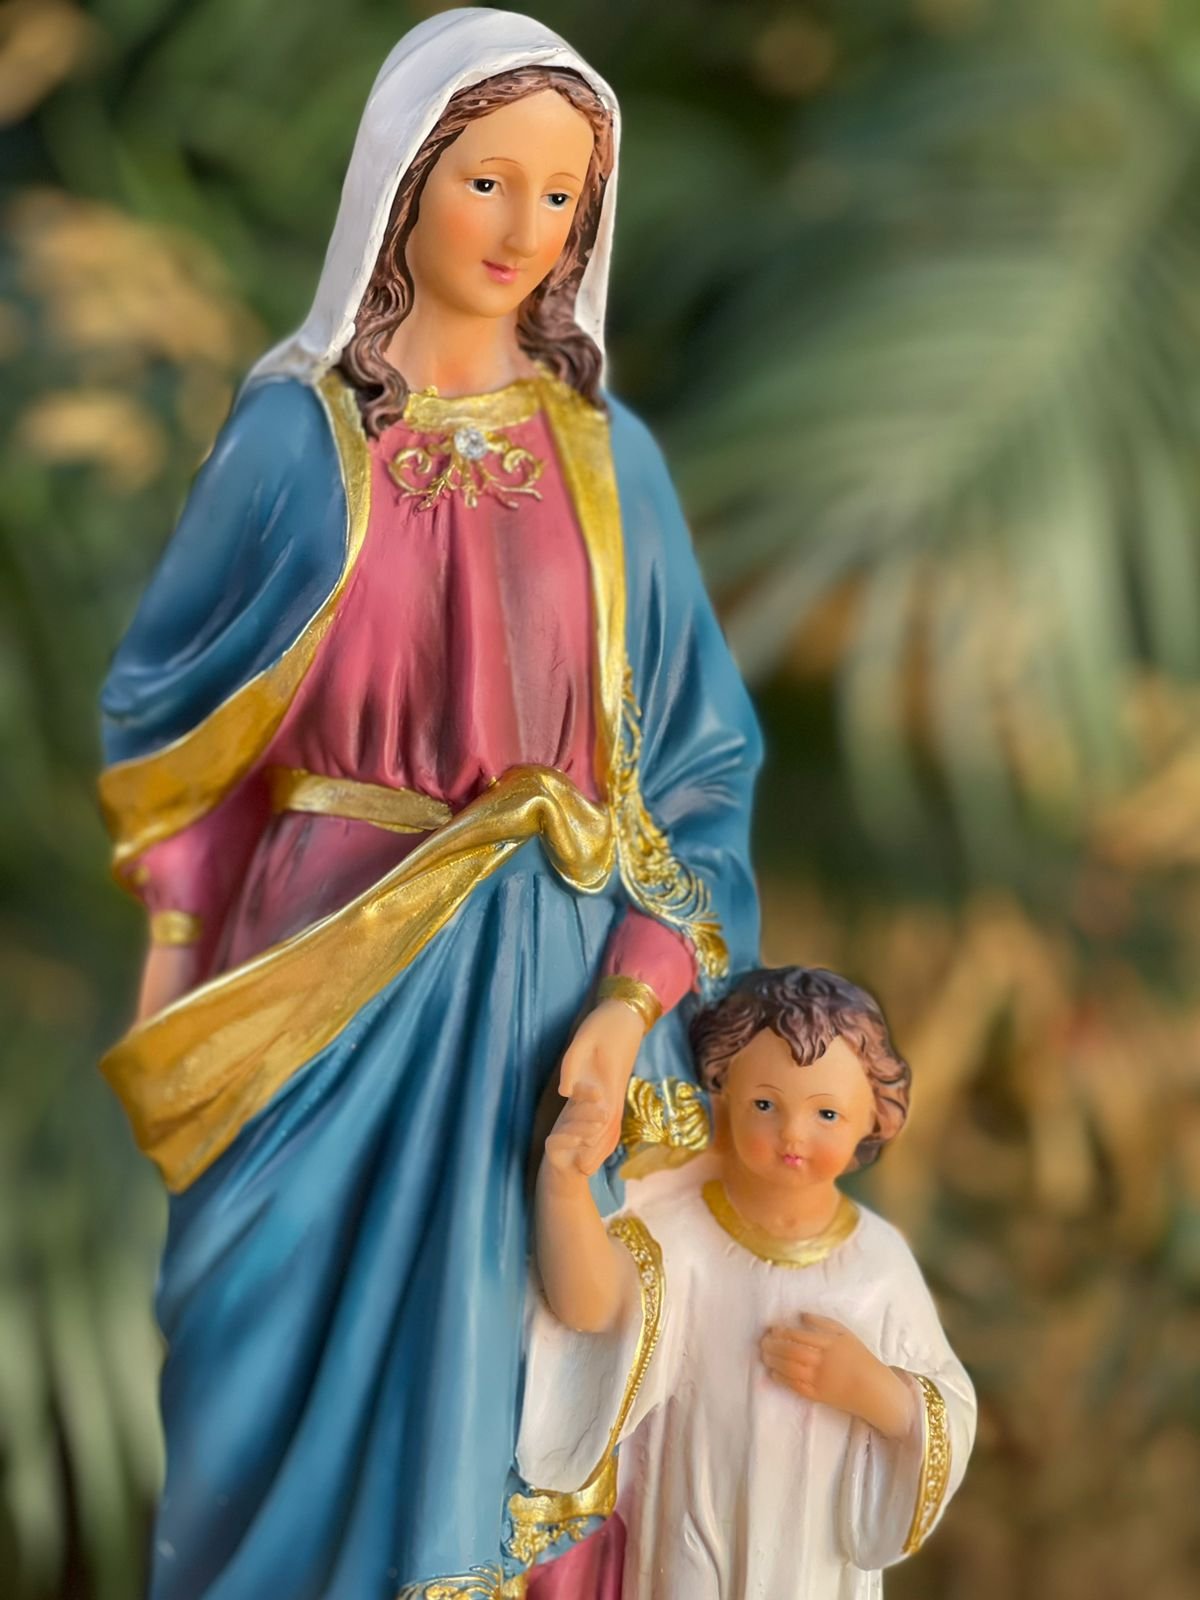 Oração Maria Passa na Frente - amem